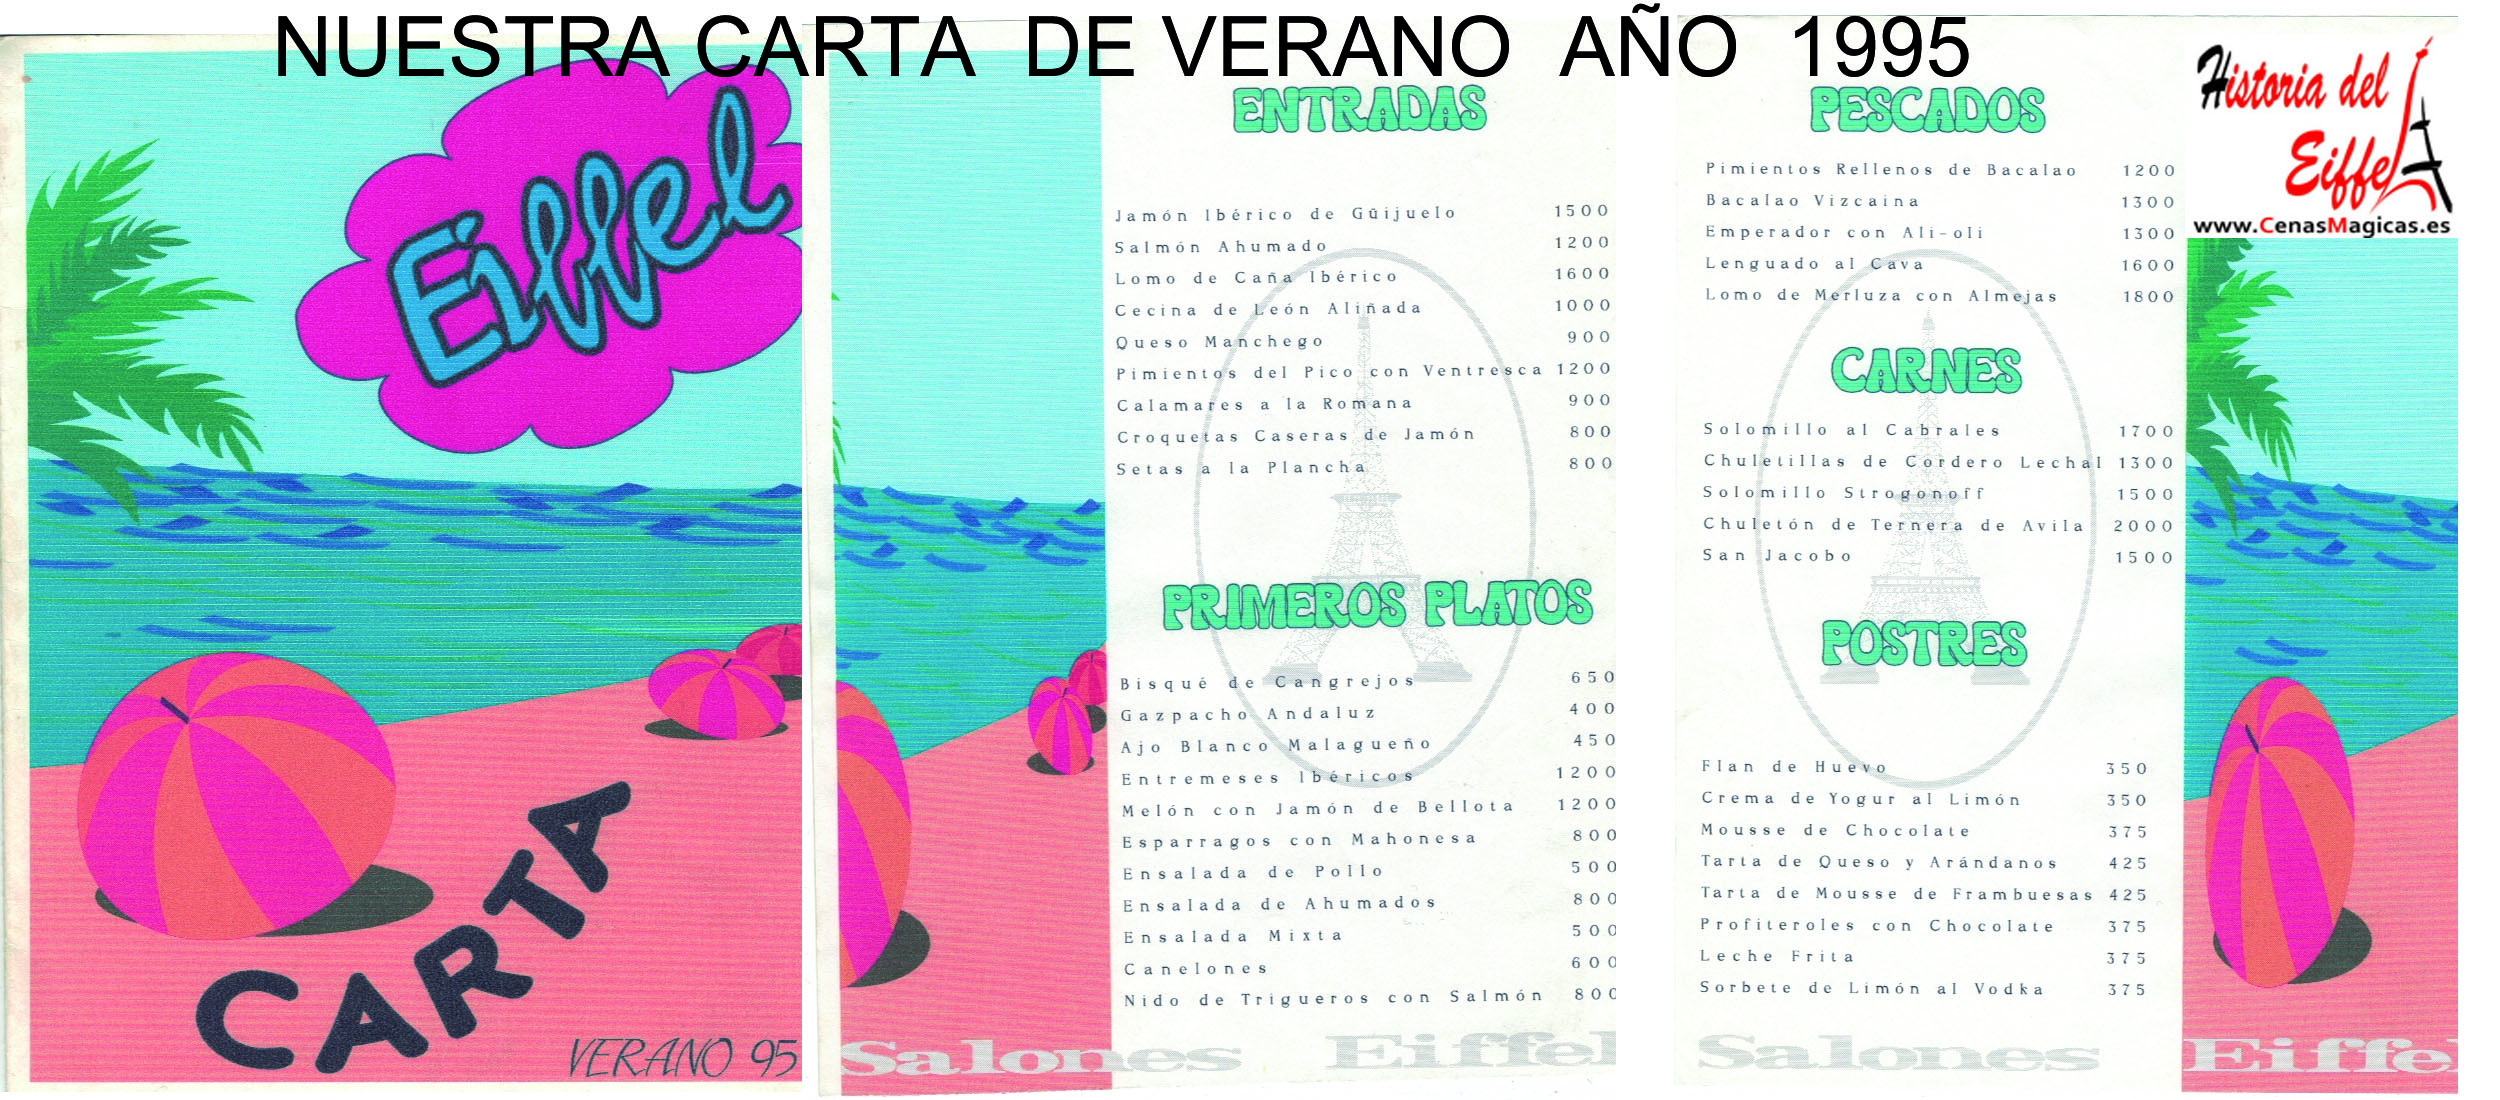 CartaVerano1995